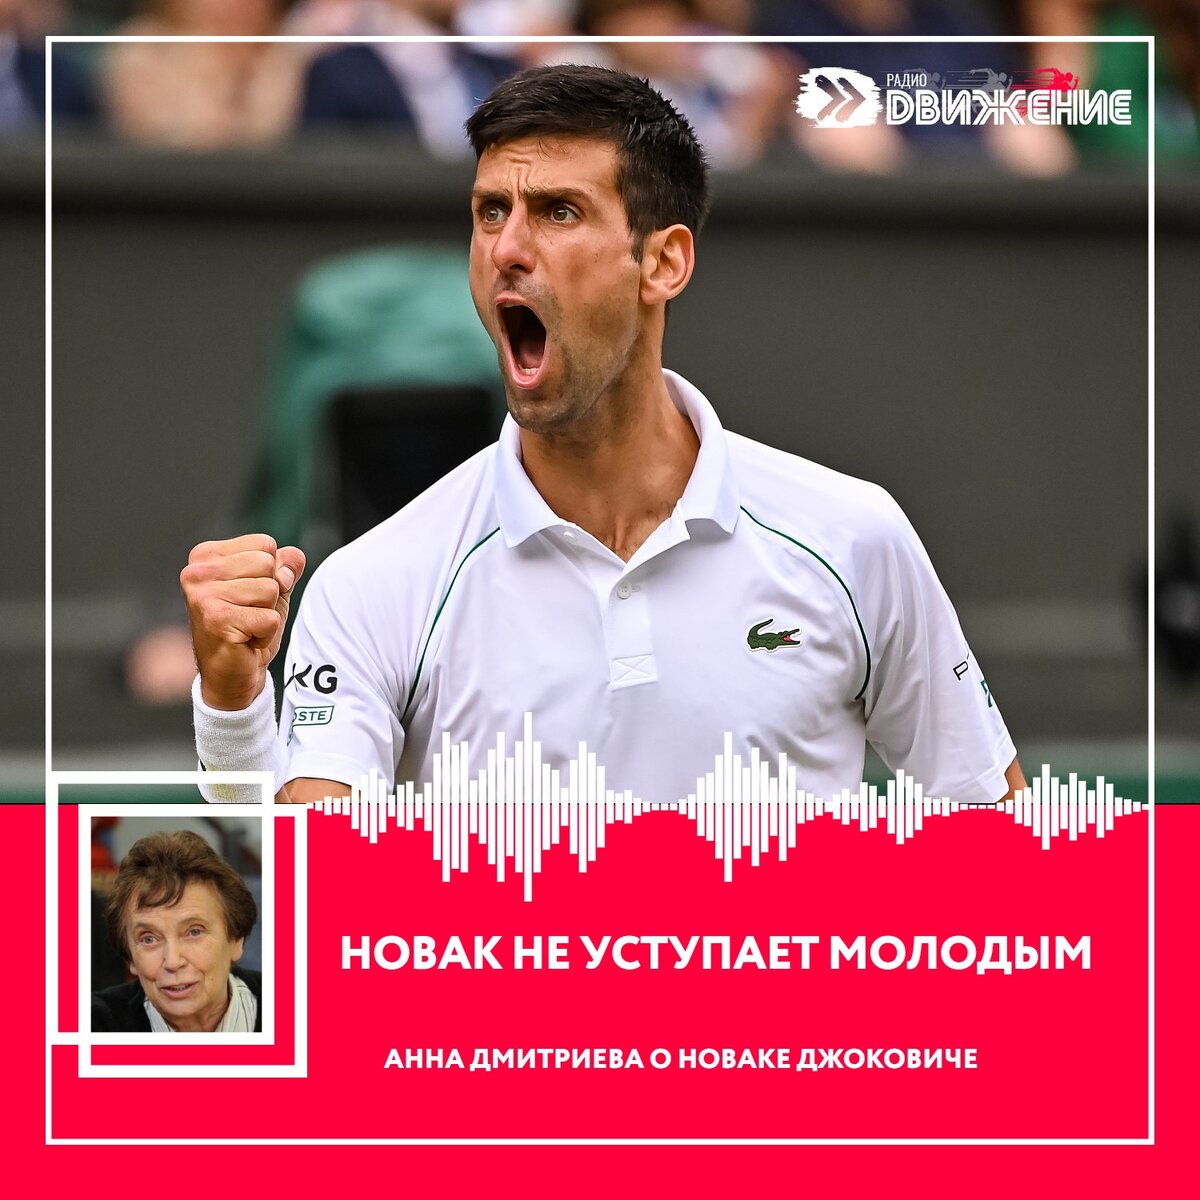 Уходящий теннисный год прошёл под знаком превосходства сербского спортсмена Новака Джоковича, который по итогам 2023 года возглавил  рейтинг теннисистов-профессионалов, уже в 8-ой раз за свою карьеру.